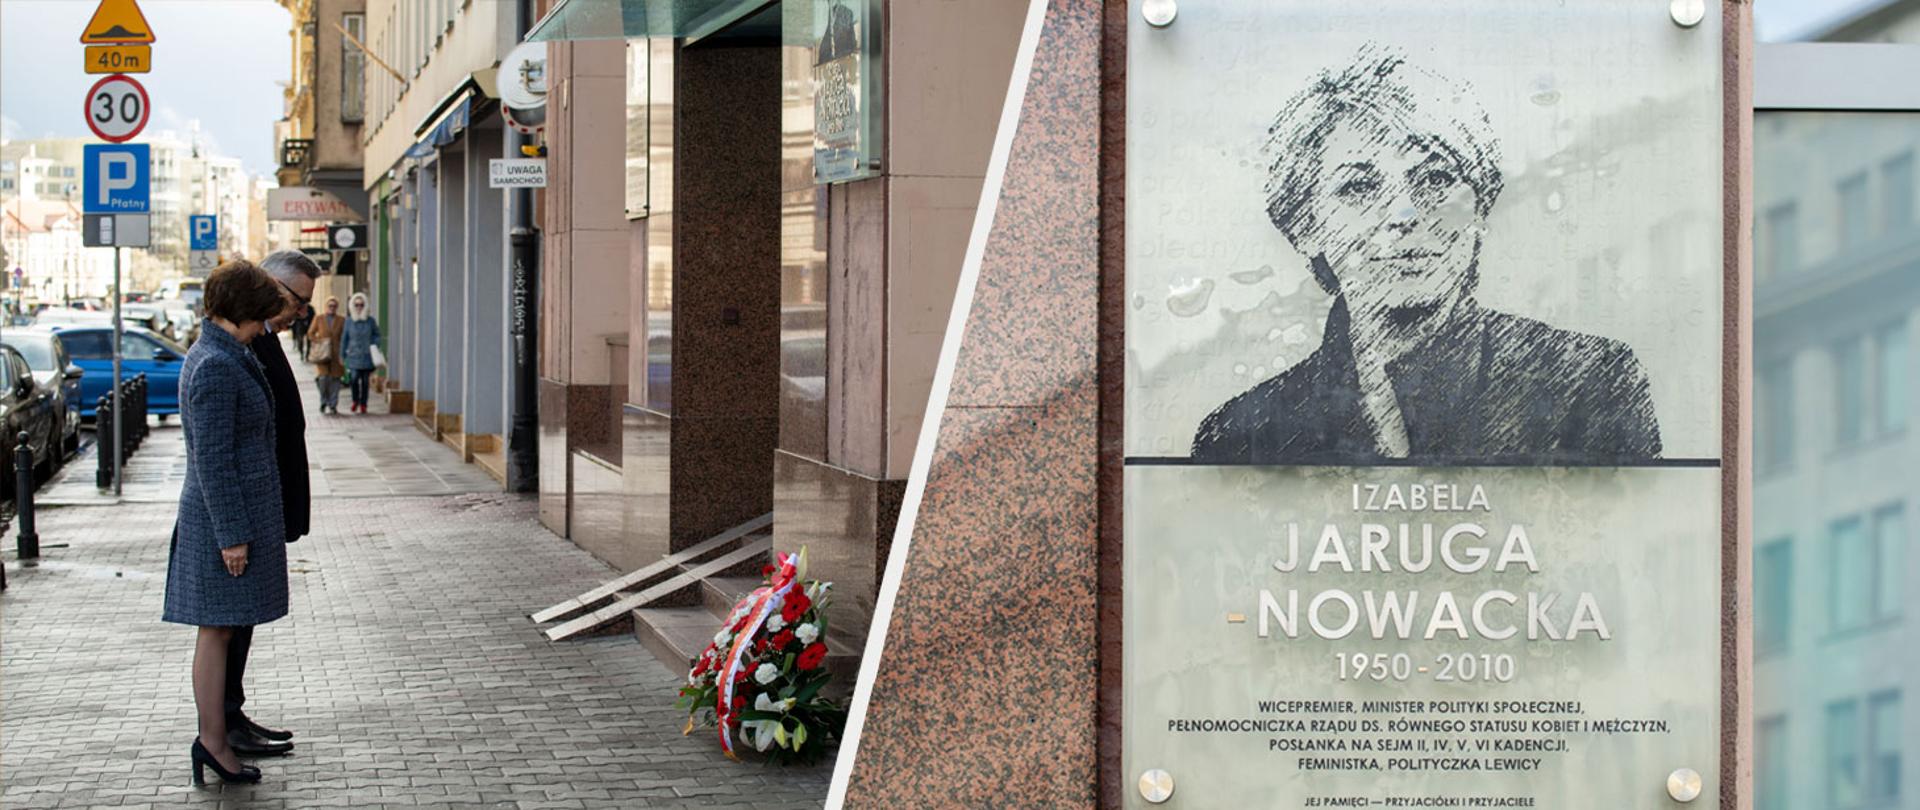 Kwiaty pod tablicą upamiętniającą Izabelę Jarugę-Nowacką